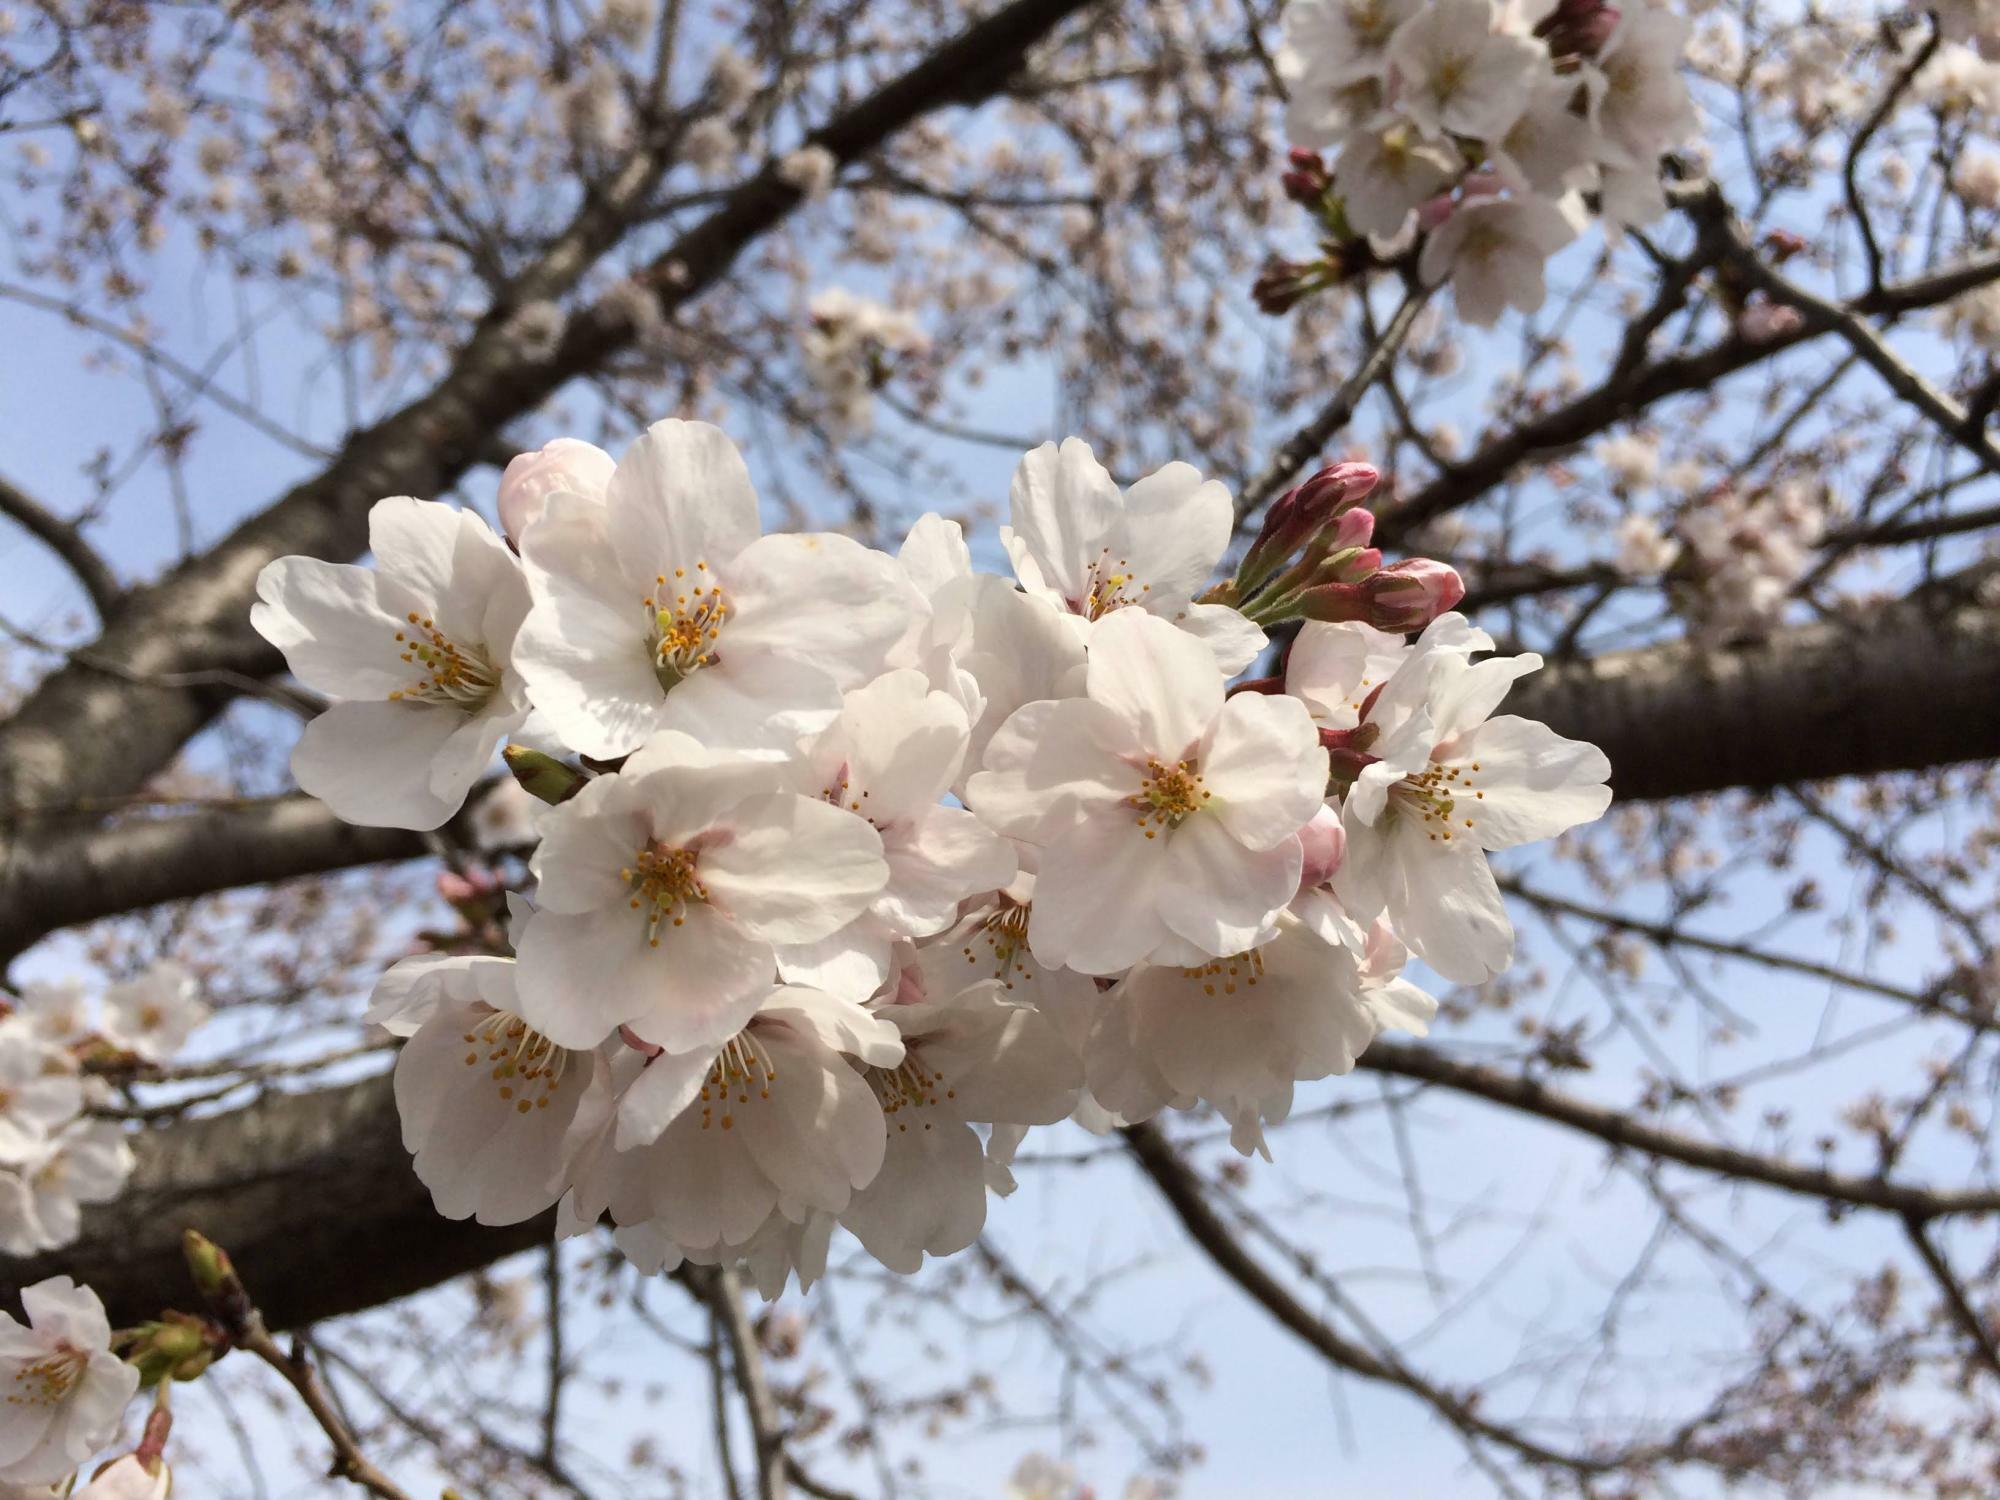 ※過去に市内で撮影された桜